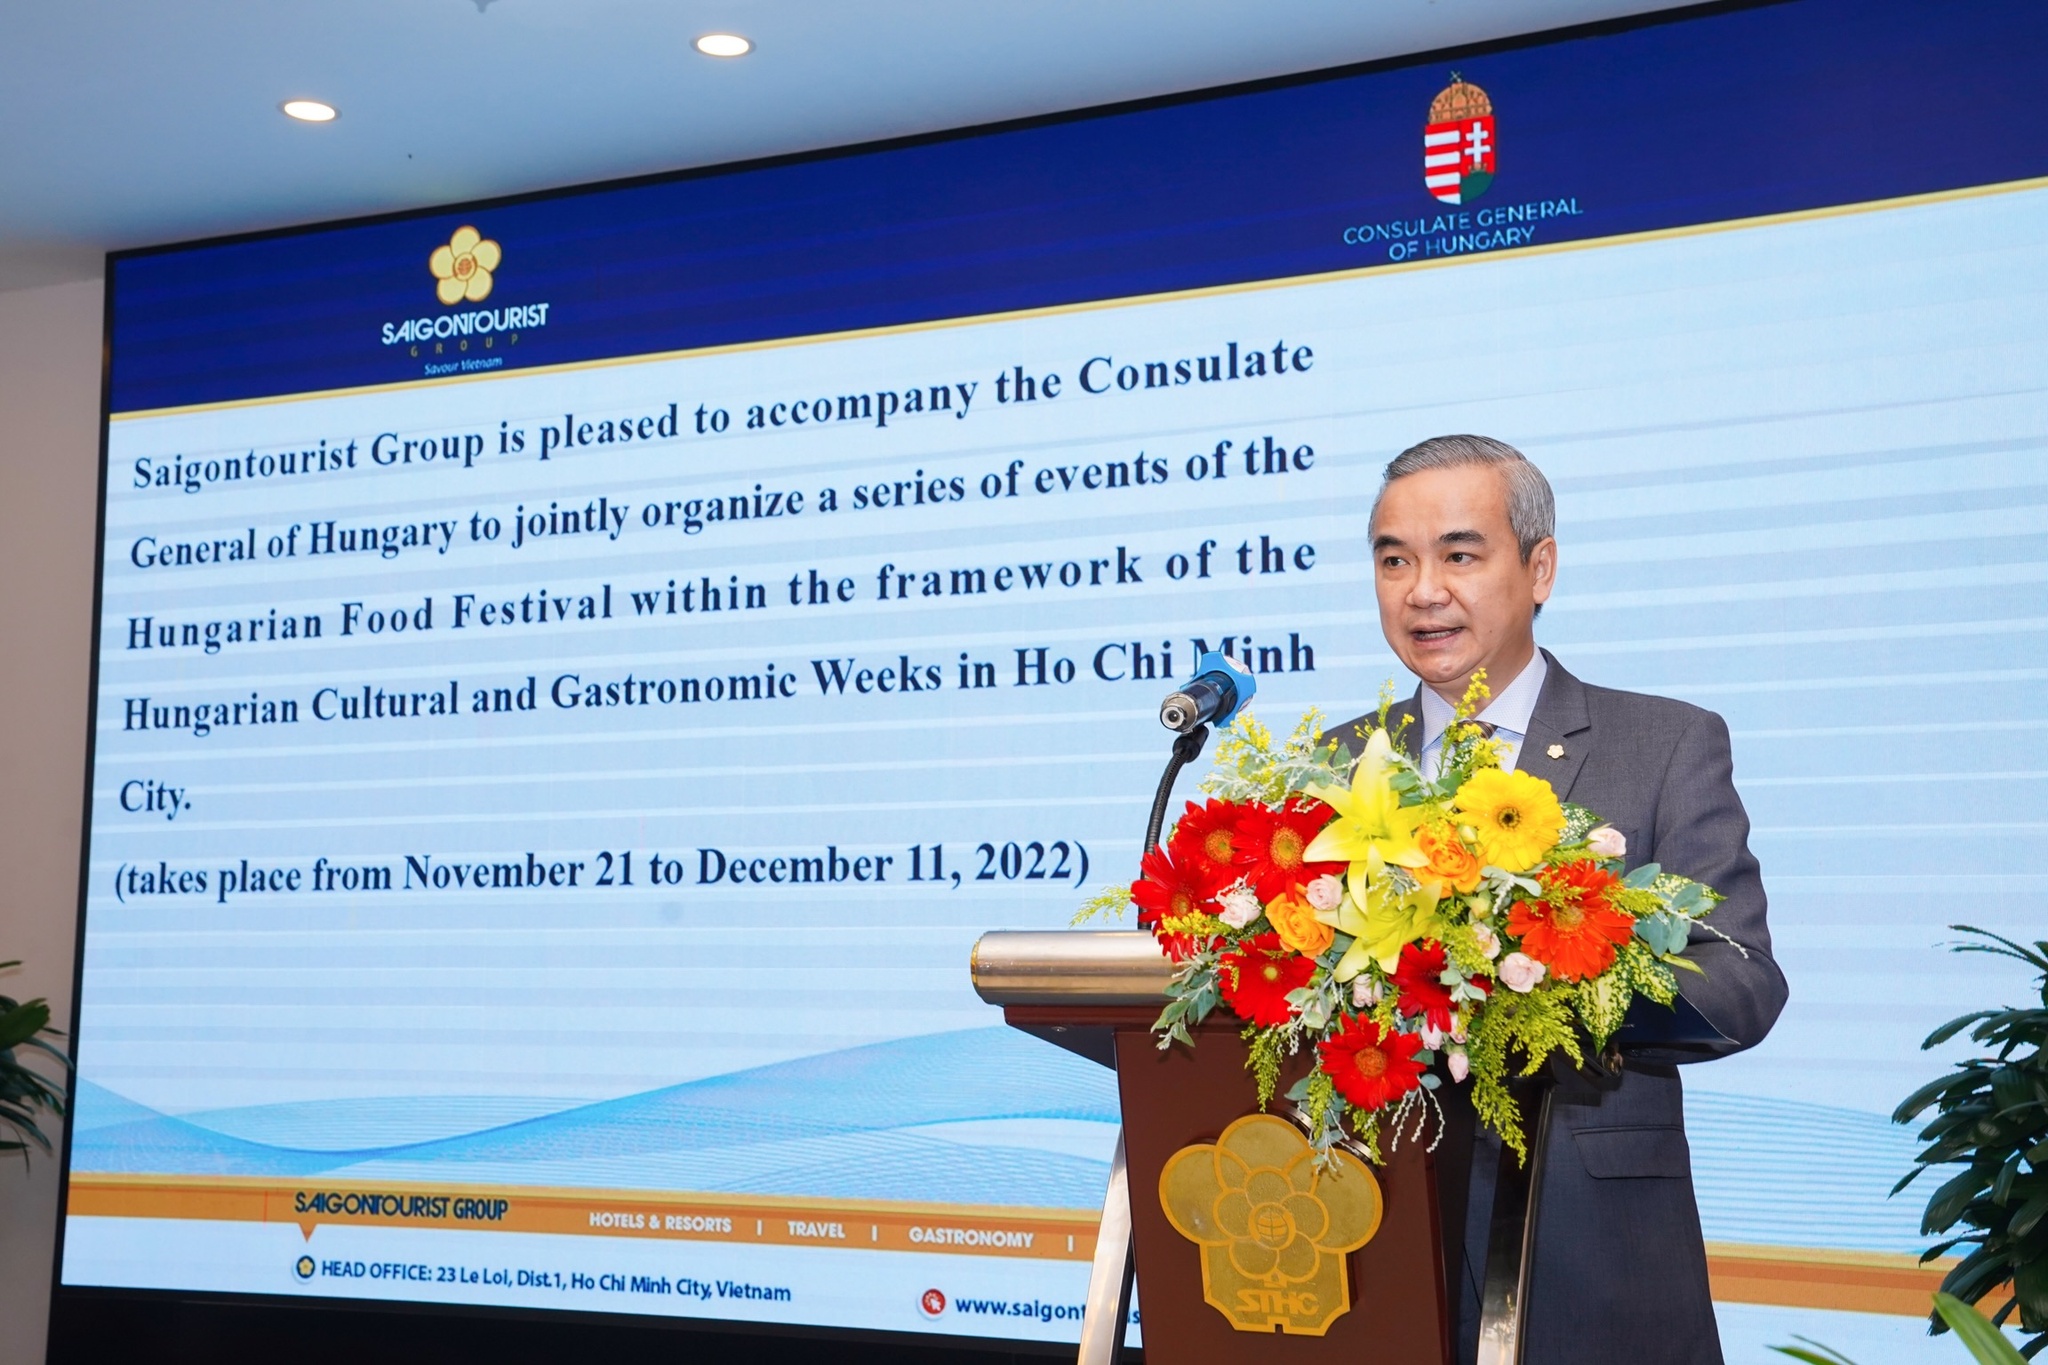 Ông Võ Anh Tài, Phó tổng giám đốc Saigontourist Group phát biểu trong buổi khai giảng